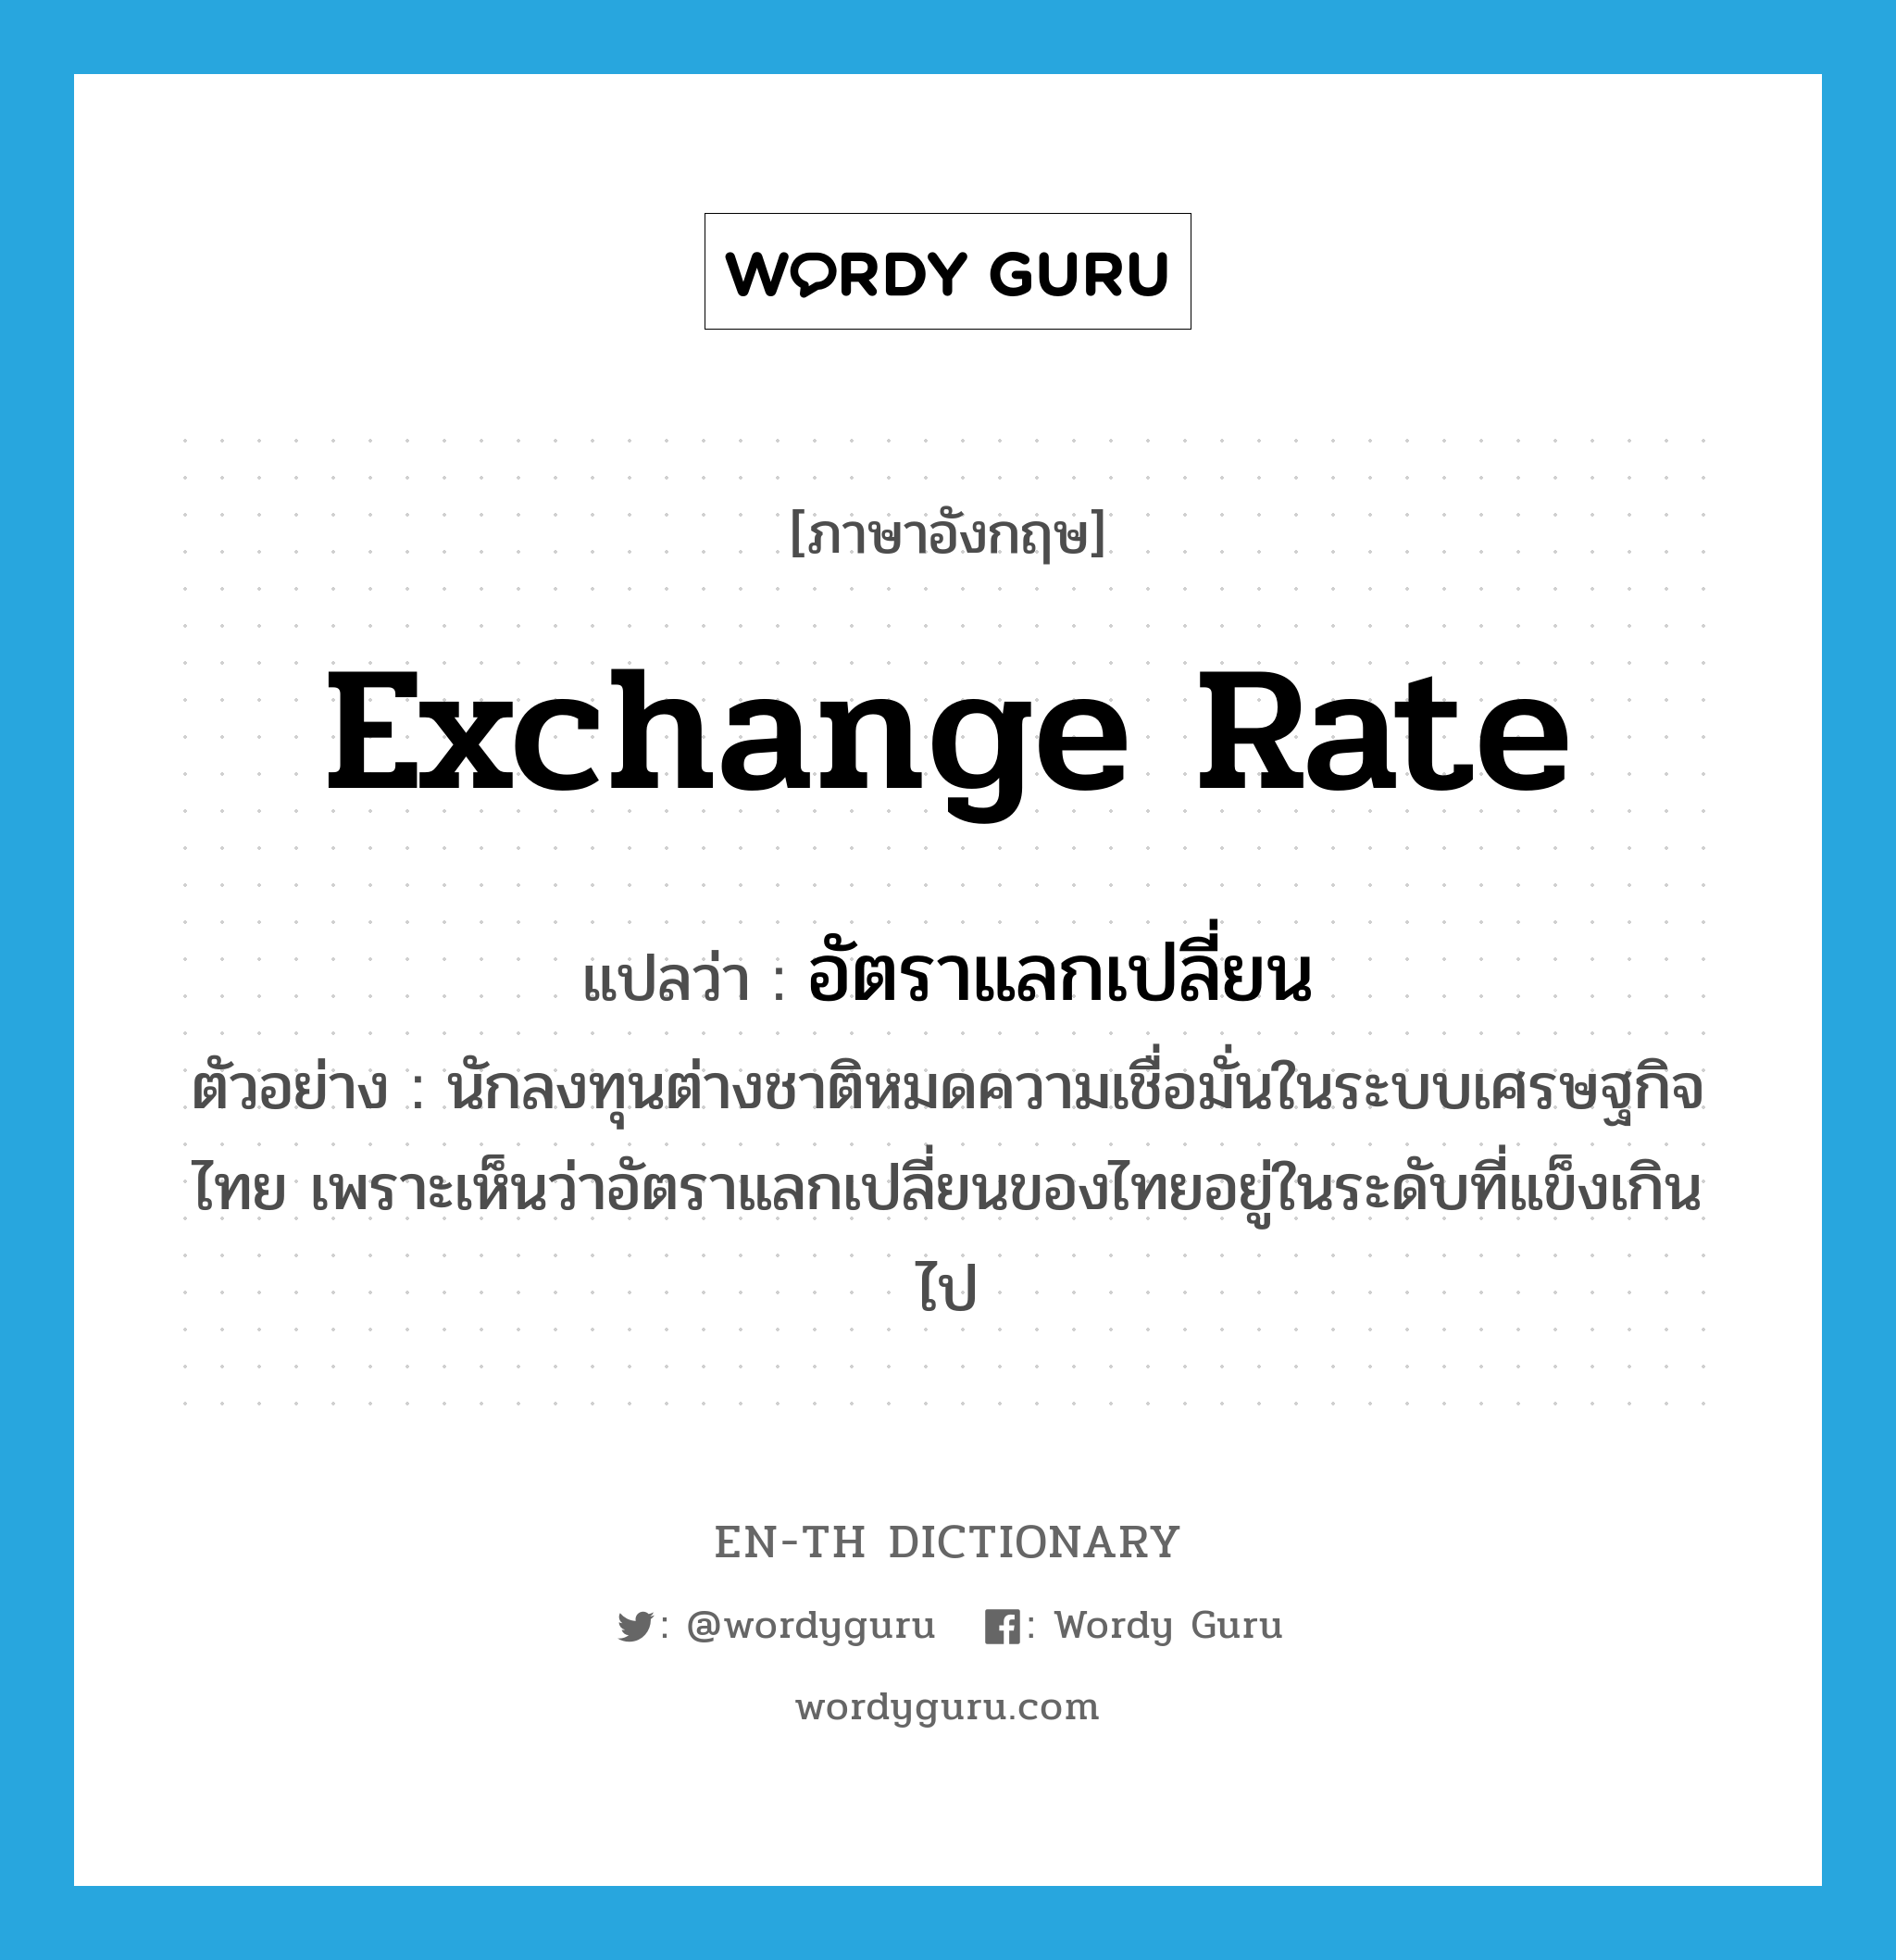 อัตราแลกเปลี่ยน ภาษาอังกฤษ?, คำศัพท์ภาษาอังกฤษ อัตราแลกเปลี่ยน แปลว่า exchange rate ประเภท N ตัวอย่าง นักลงทุนต่างชาติหมดความเชื่อมั่นในระบบเศรษฐกิจไทย เพราะเห็นว่าอัตราแลกเปลี่ยนของไทยอยู่ในระดับที่แข็งเกินไป หมวด N